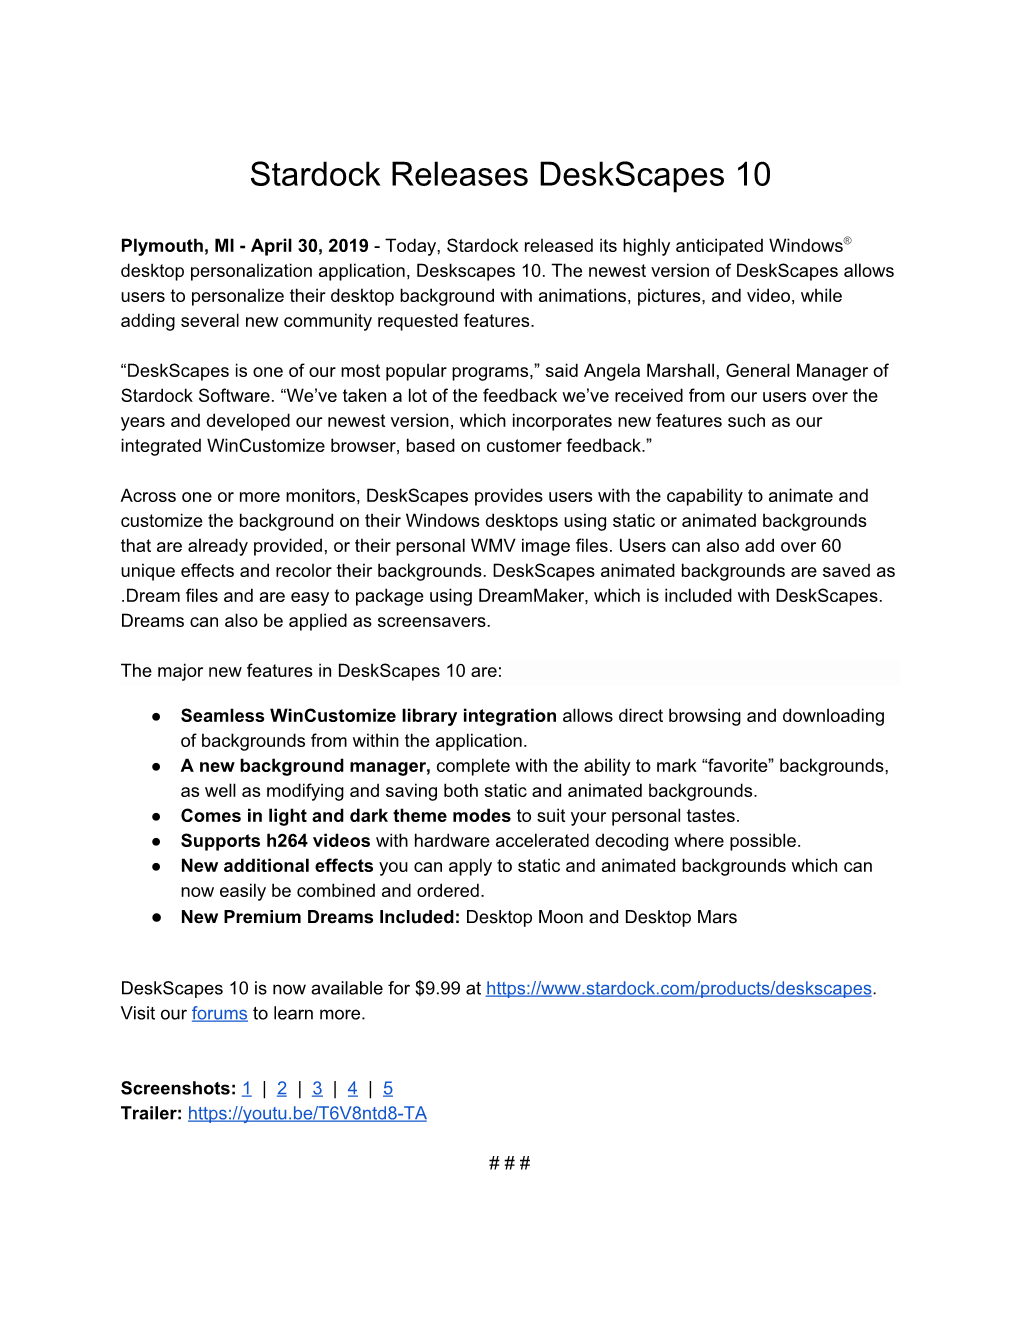 Stardock Releases Deskscapes 10